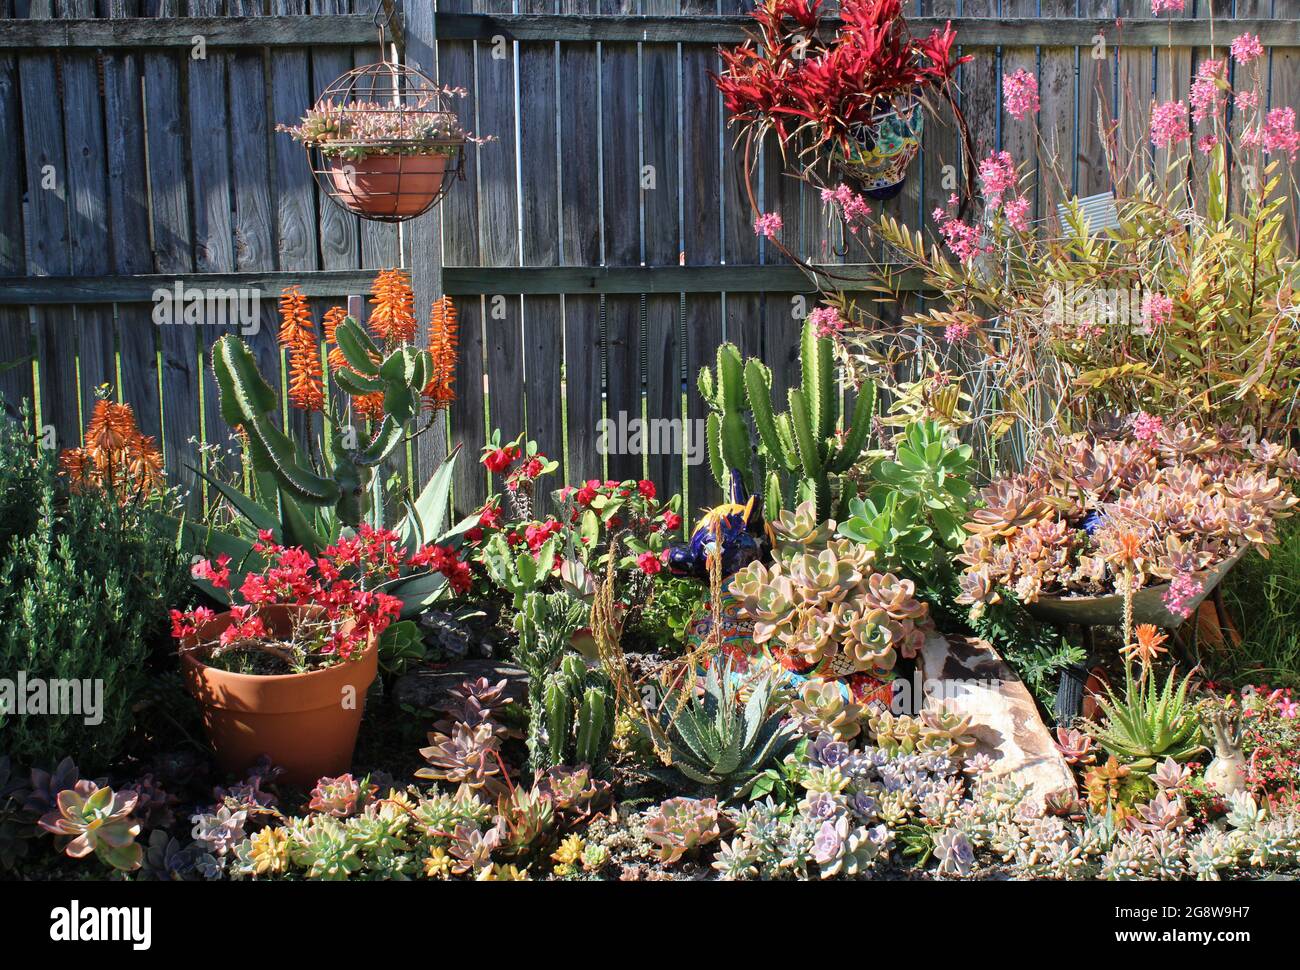 Jardín residencial privado australiano, con suculentos que incluyen Echeverias y Aloe. Foto de stock